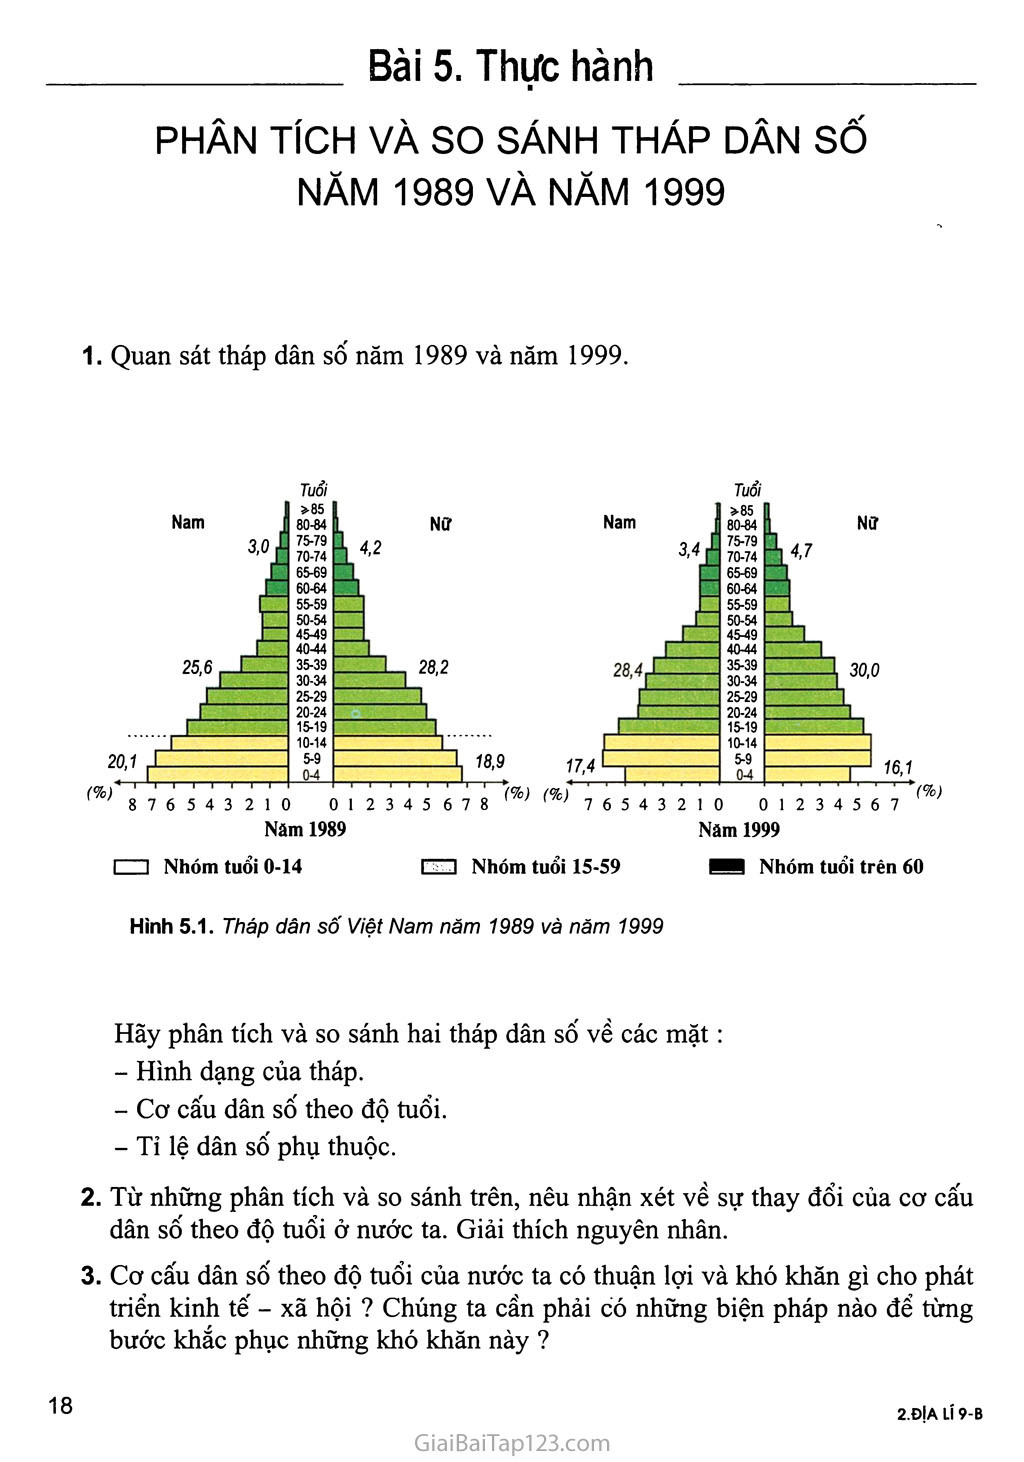 Bài 5. Thực hành: Phân tích và so sánh tháp dân số năm 1989 và năm 1999 trang 1